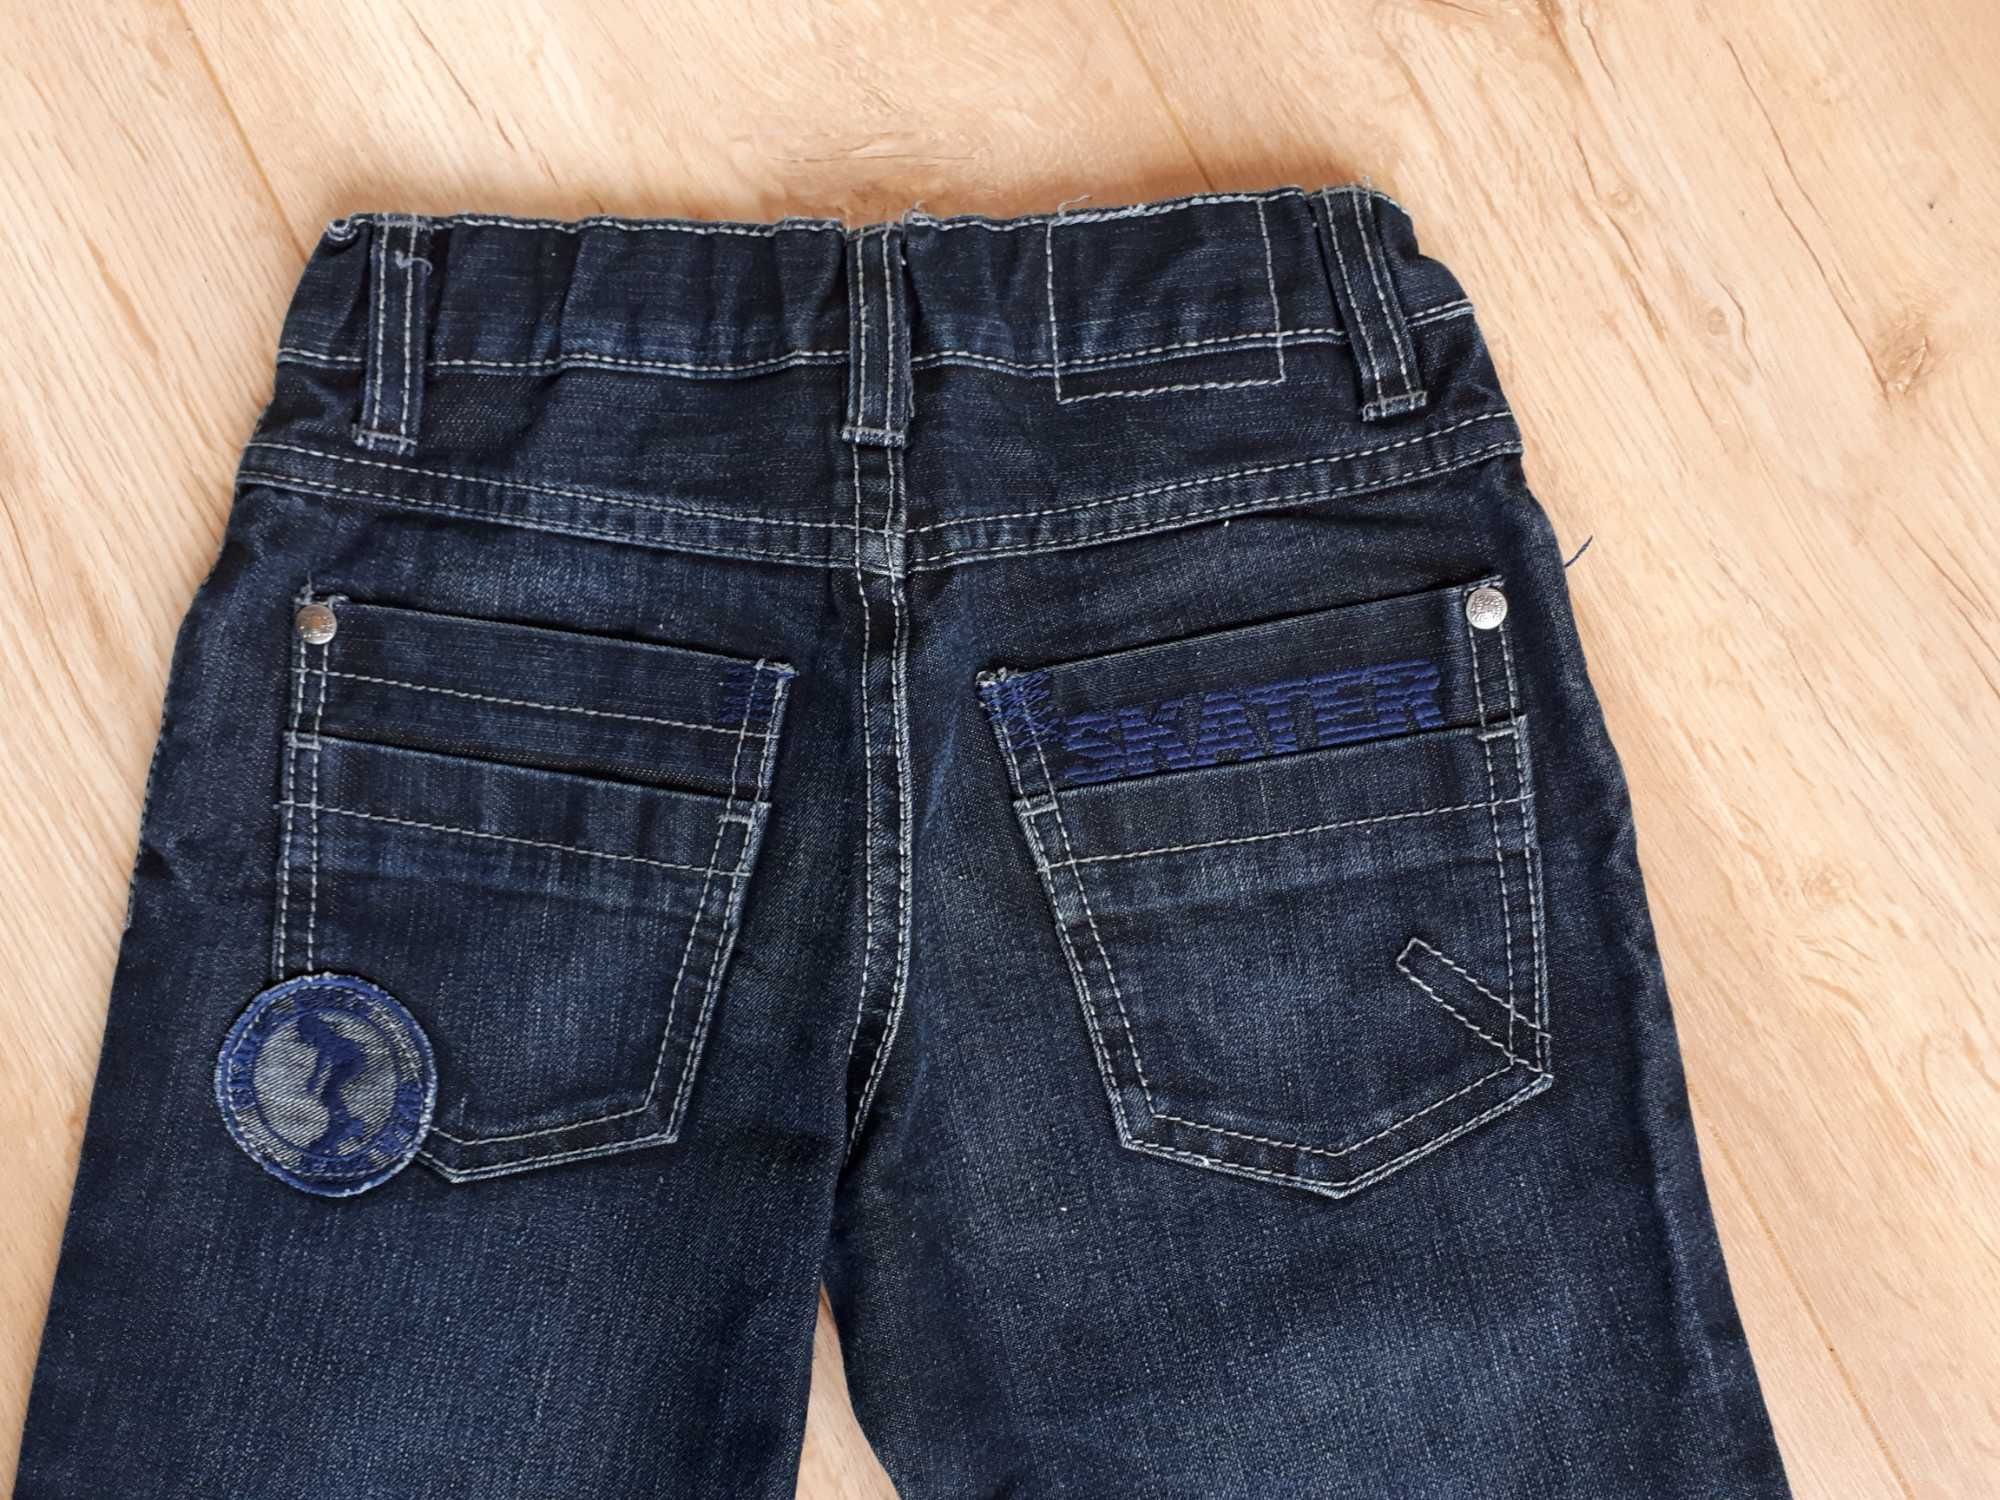 R.110 spodnie jeans z aplikacją